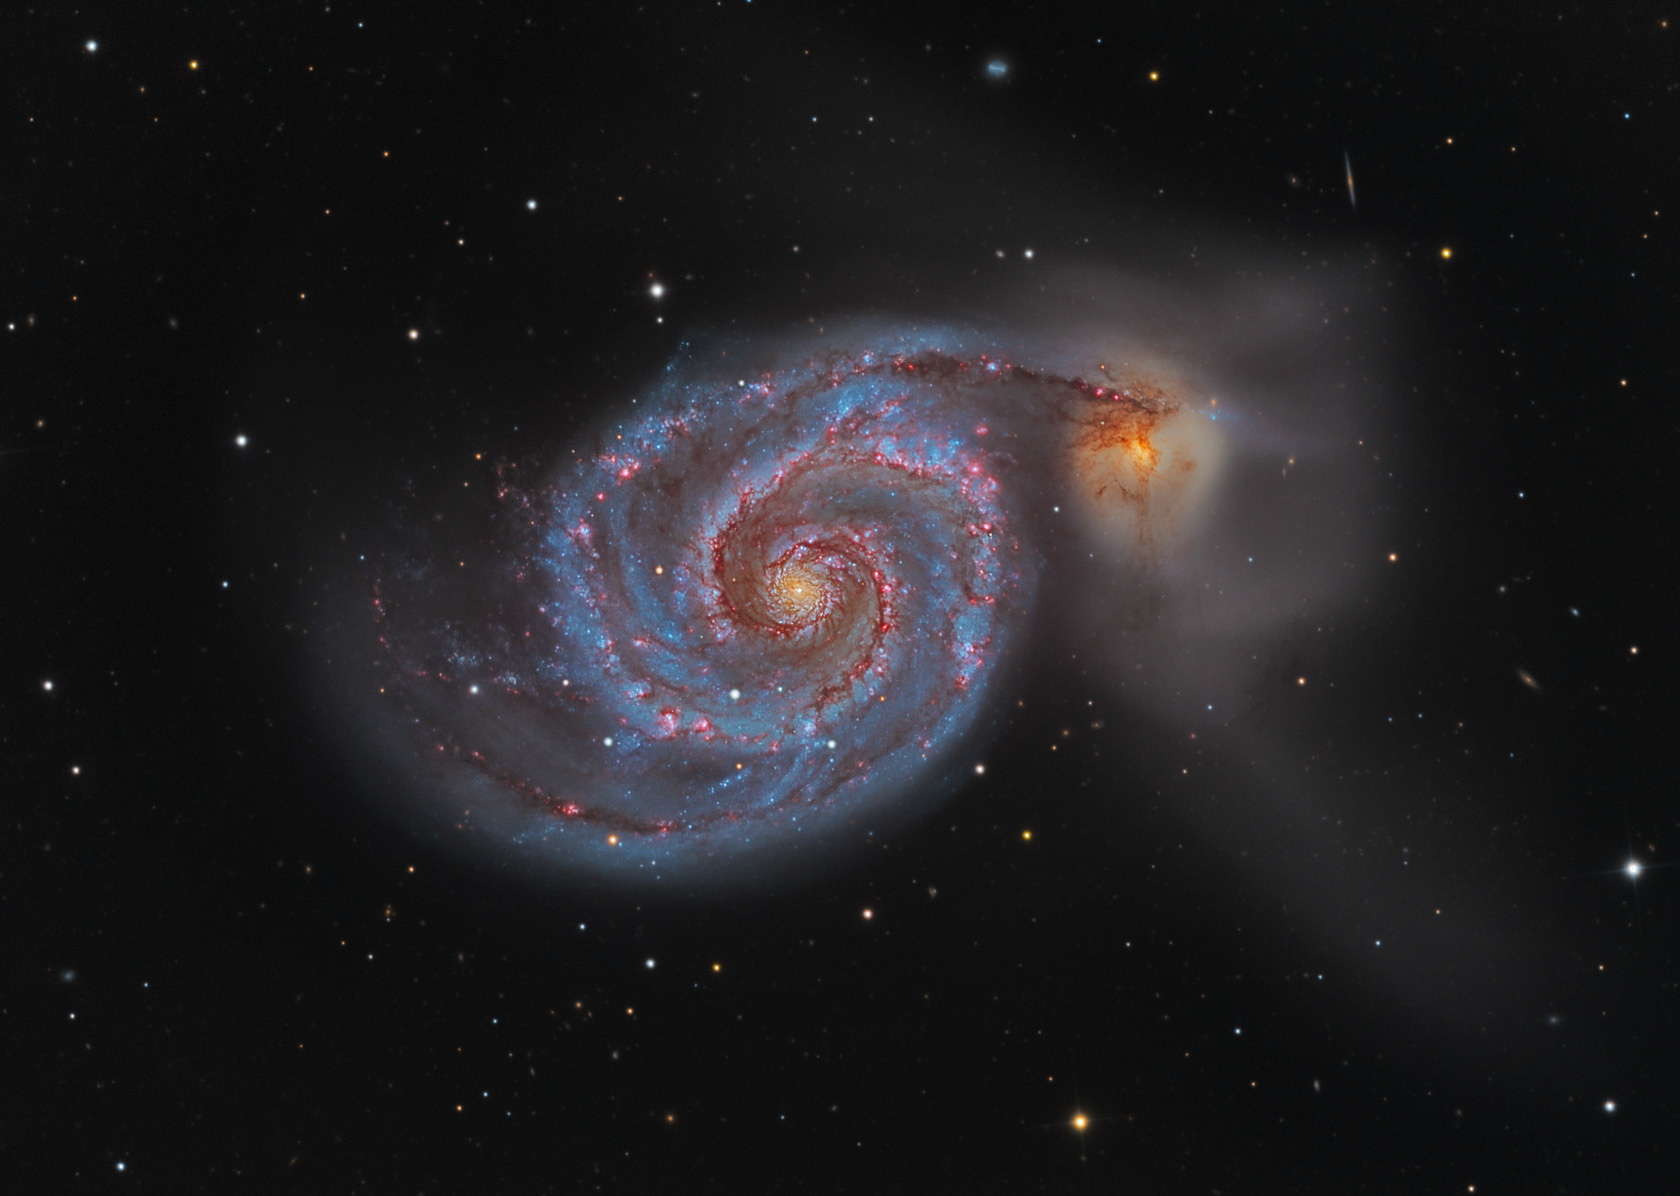 La galassia vortice M51 non è molto lontana da un’altra più piccola, chiamata NGC 5195. La forma a spirale suggerisce l’ipotesi che la galassia principale abbia “attratto” tutta la materia verso di lei, formando un immenso vortice 